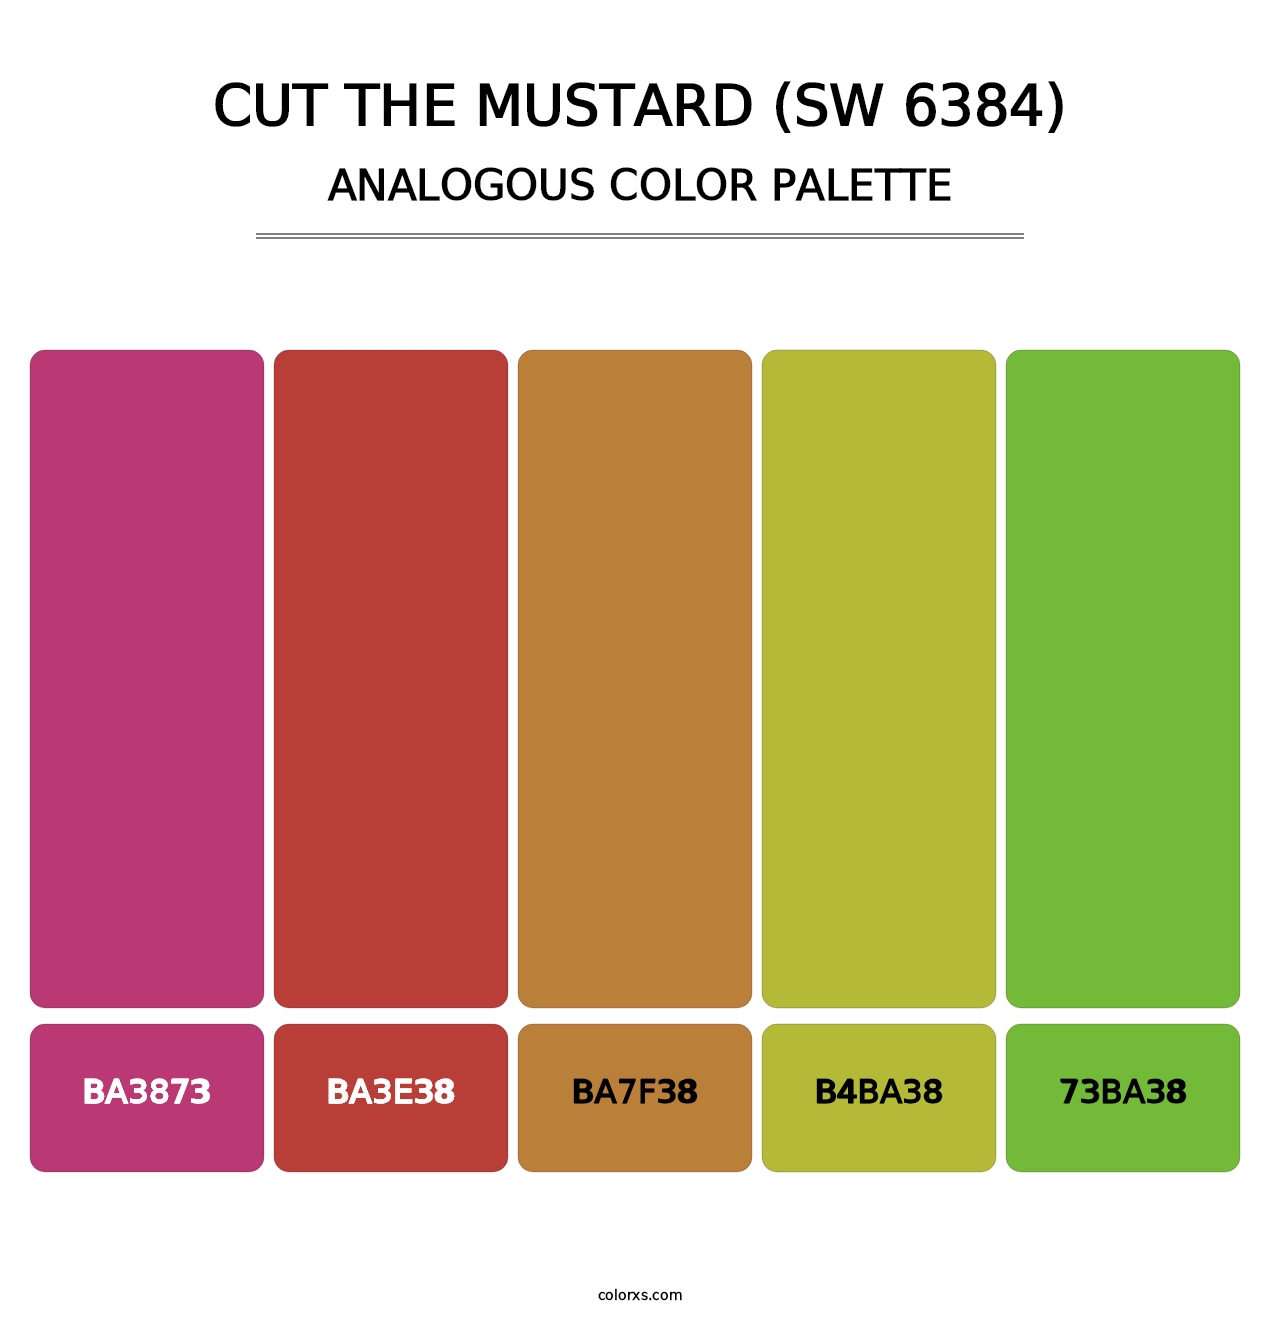 Cut the Mustard (SW 6384) - Analogous Color Palette